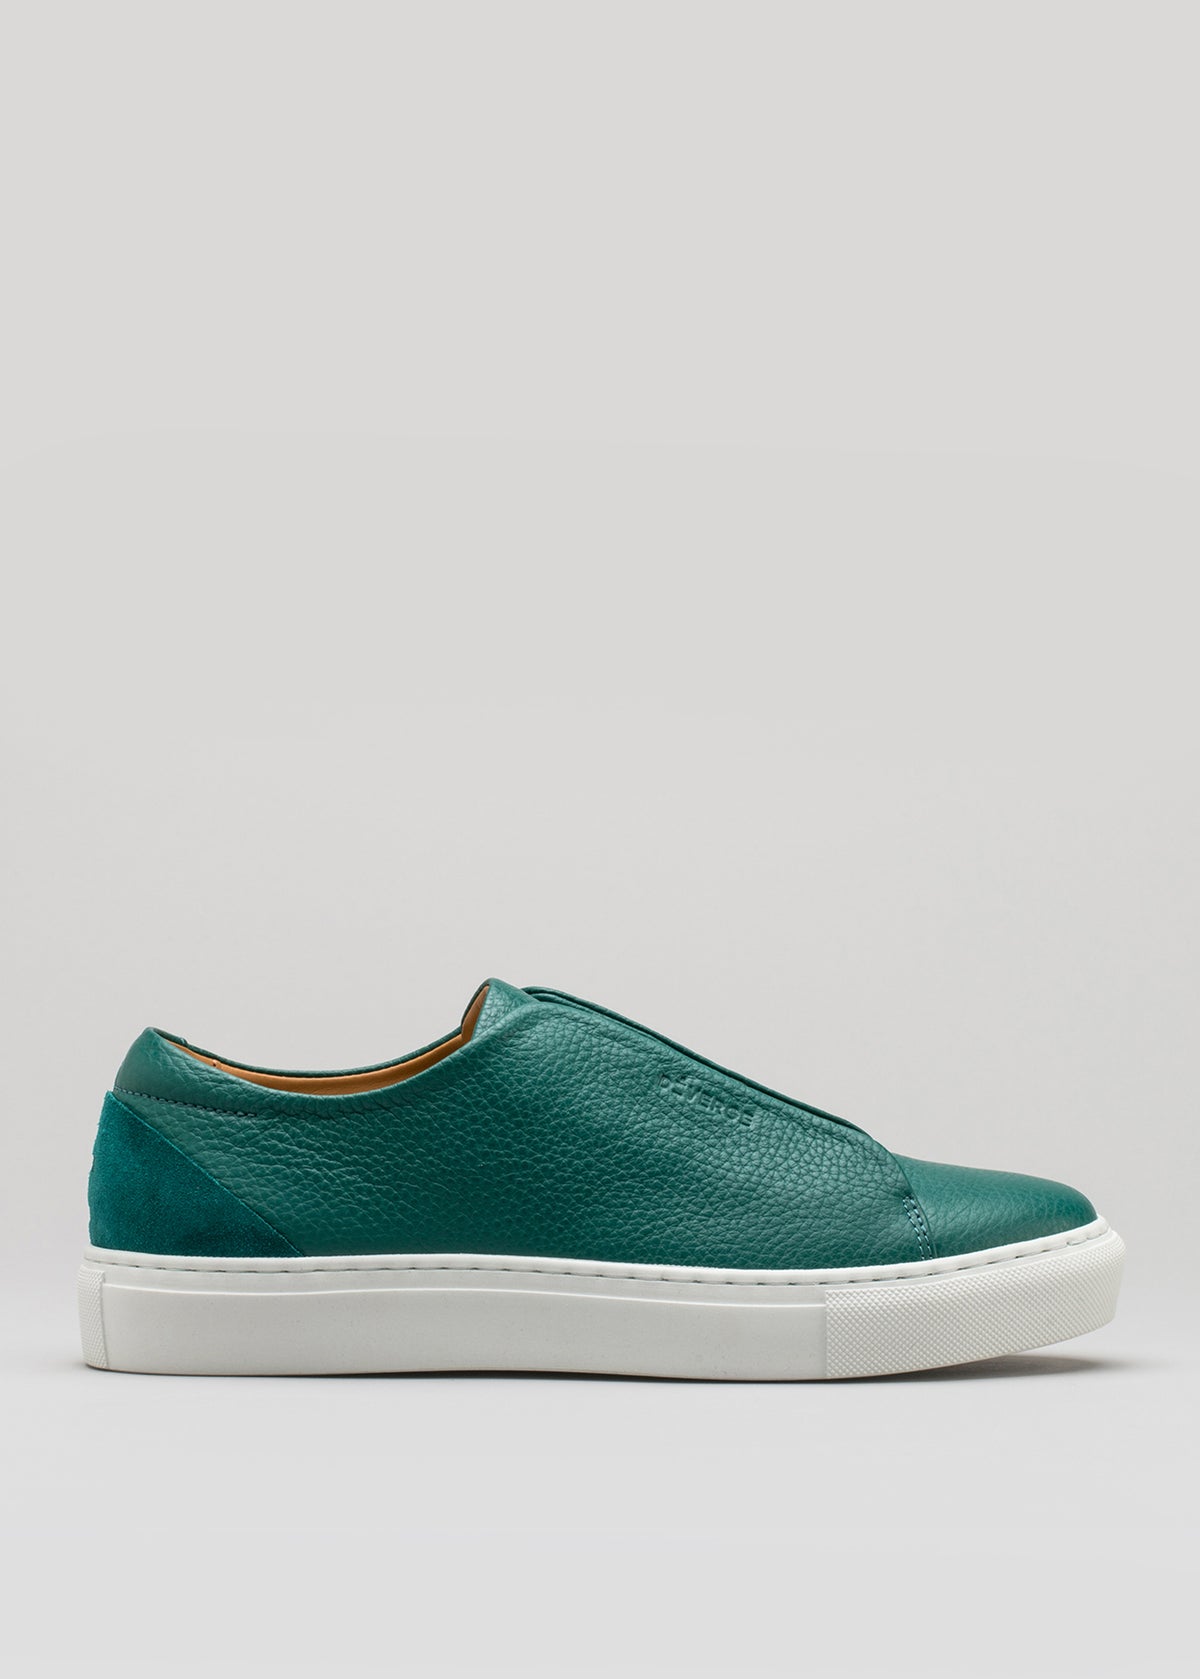 verde esmeralda cuero premium bajo sneakers en diseño limpio sideview